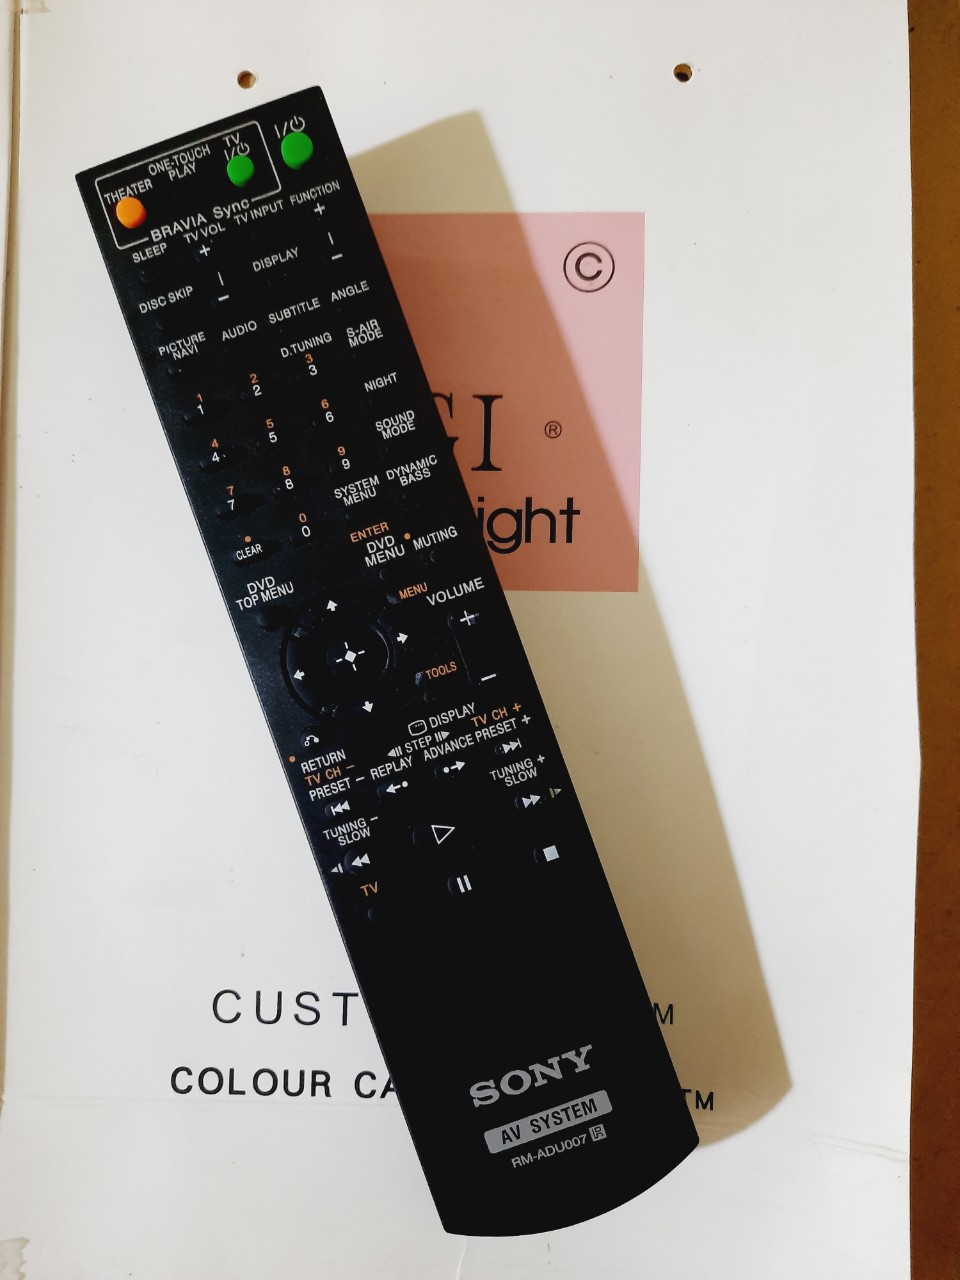 _ Remote điều khiển dàn âm thanh Sony RM- ADU007 - Hàng mới chính hãng